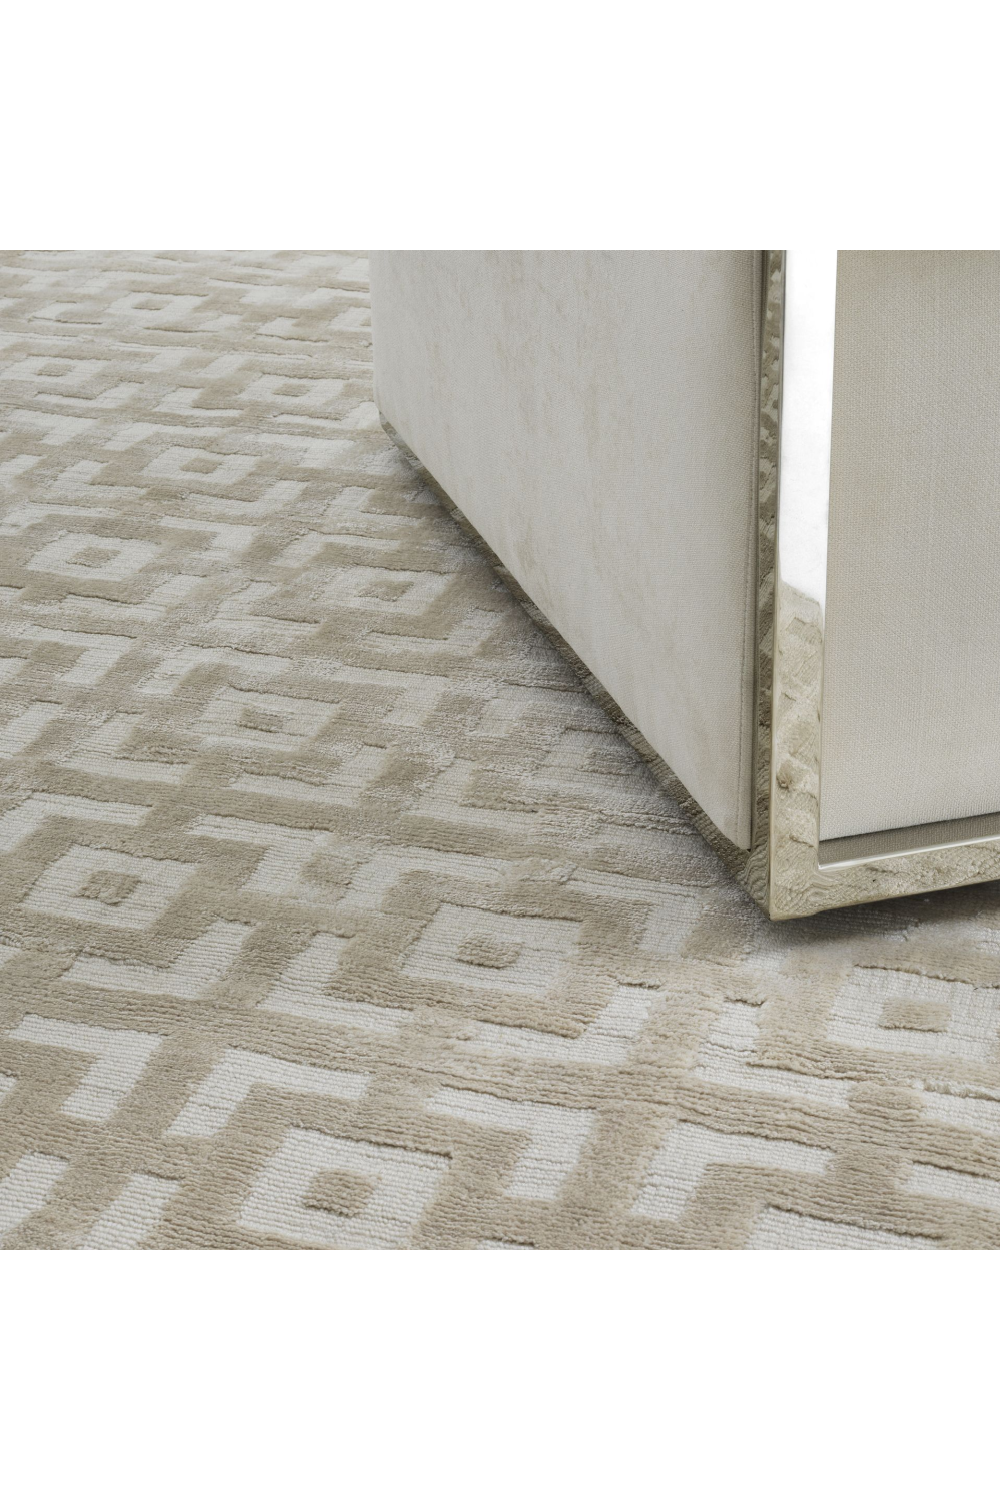 Ivory Carpet 7' x 10' | Eichholtz Reeves | Oroa.com